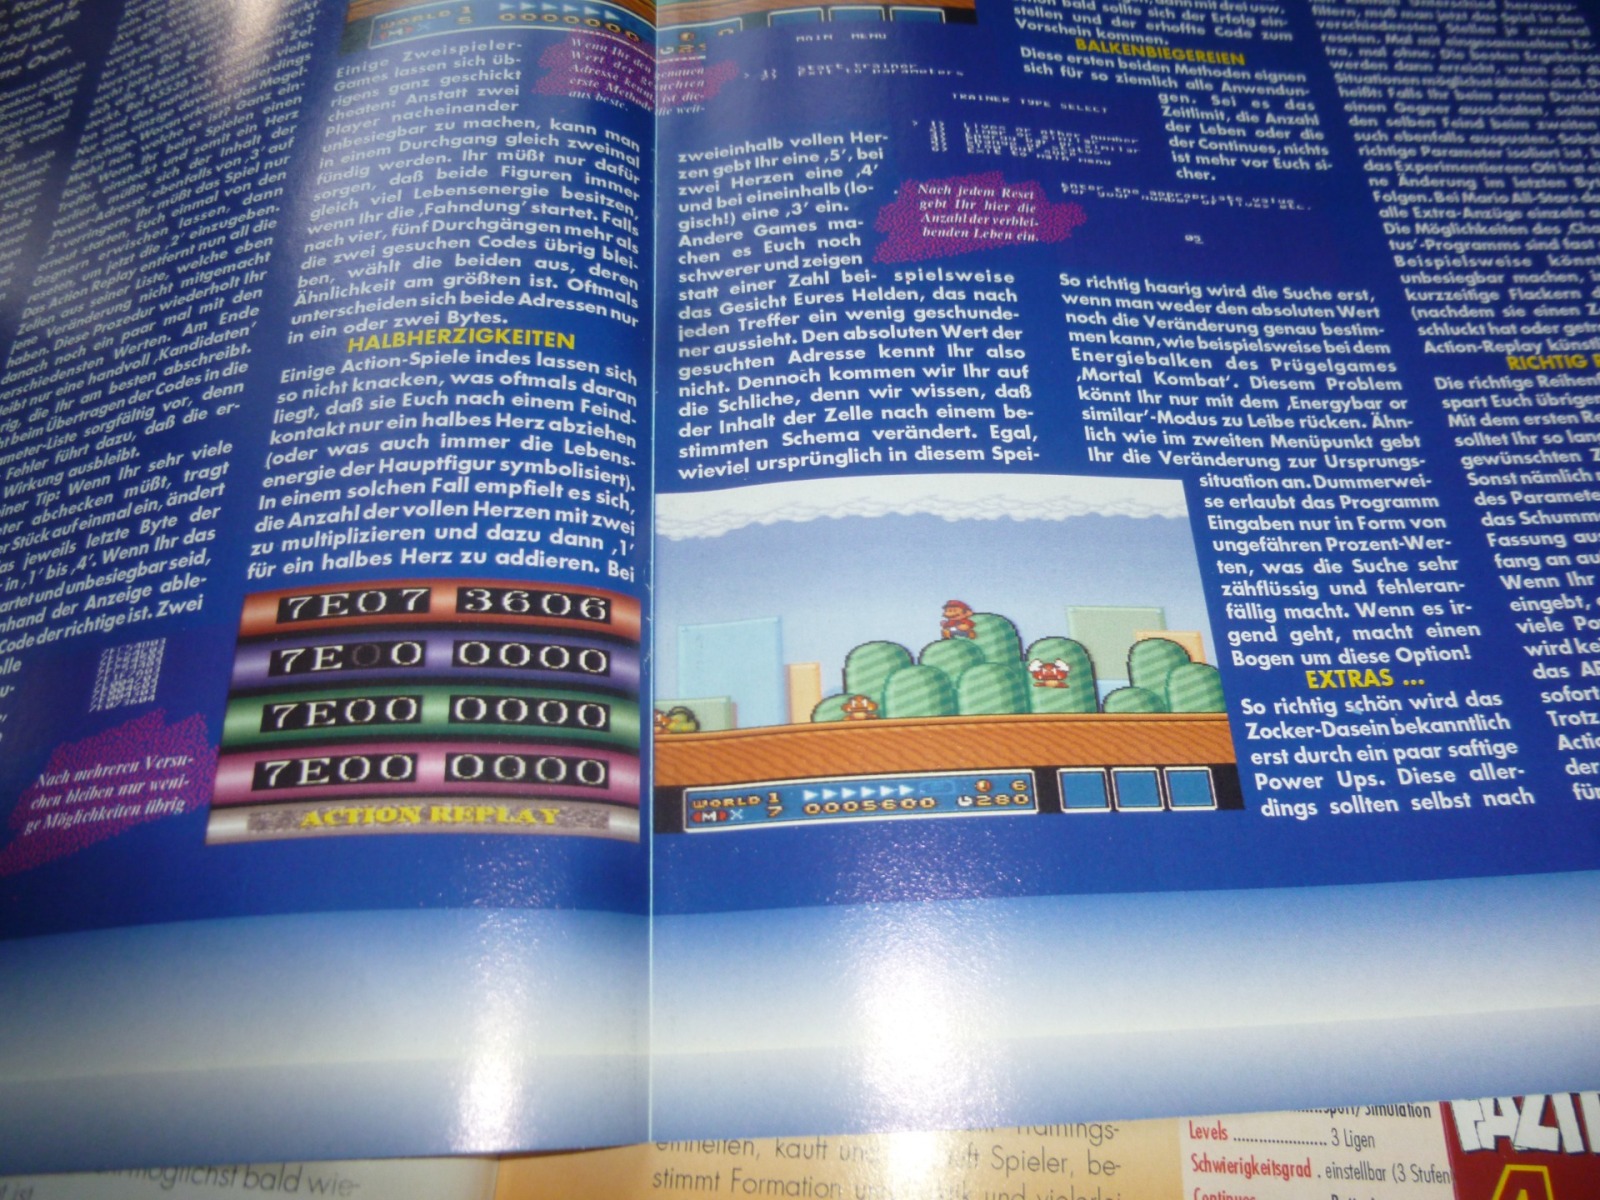 TOTAL Das unabhängige Magazin - 100% Nintendo - Ausgabe 12/93 1993 15